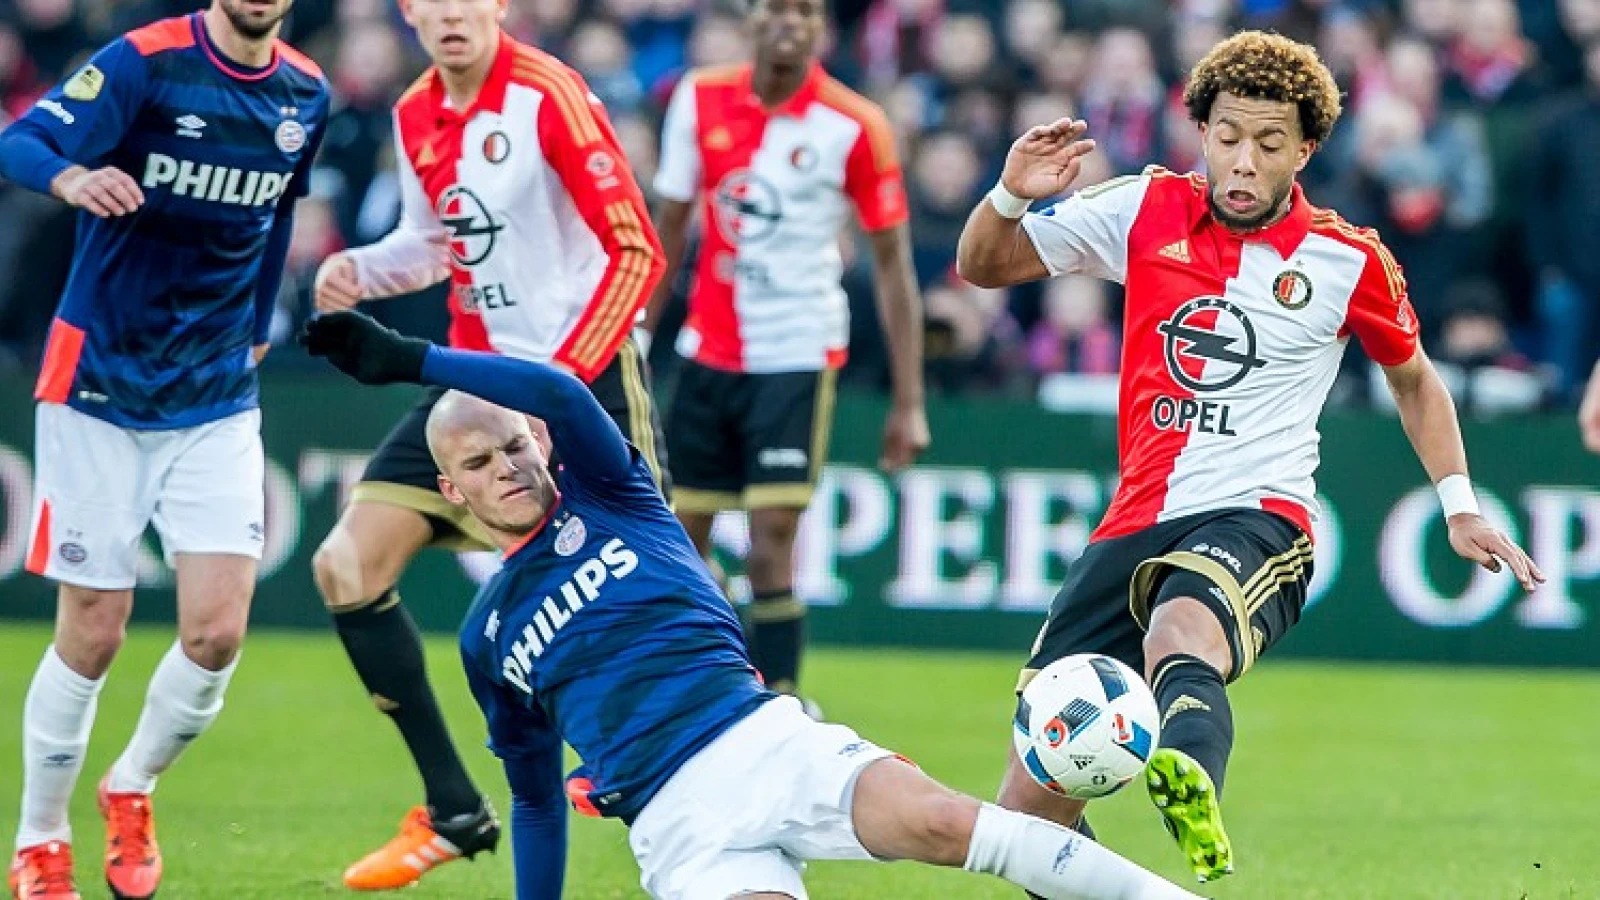 LIVE | Feyenoord - PSV 0-2 | Einde wedstrijd